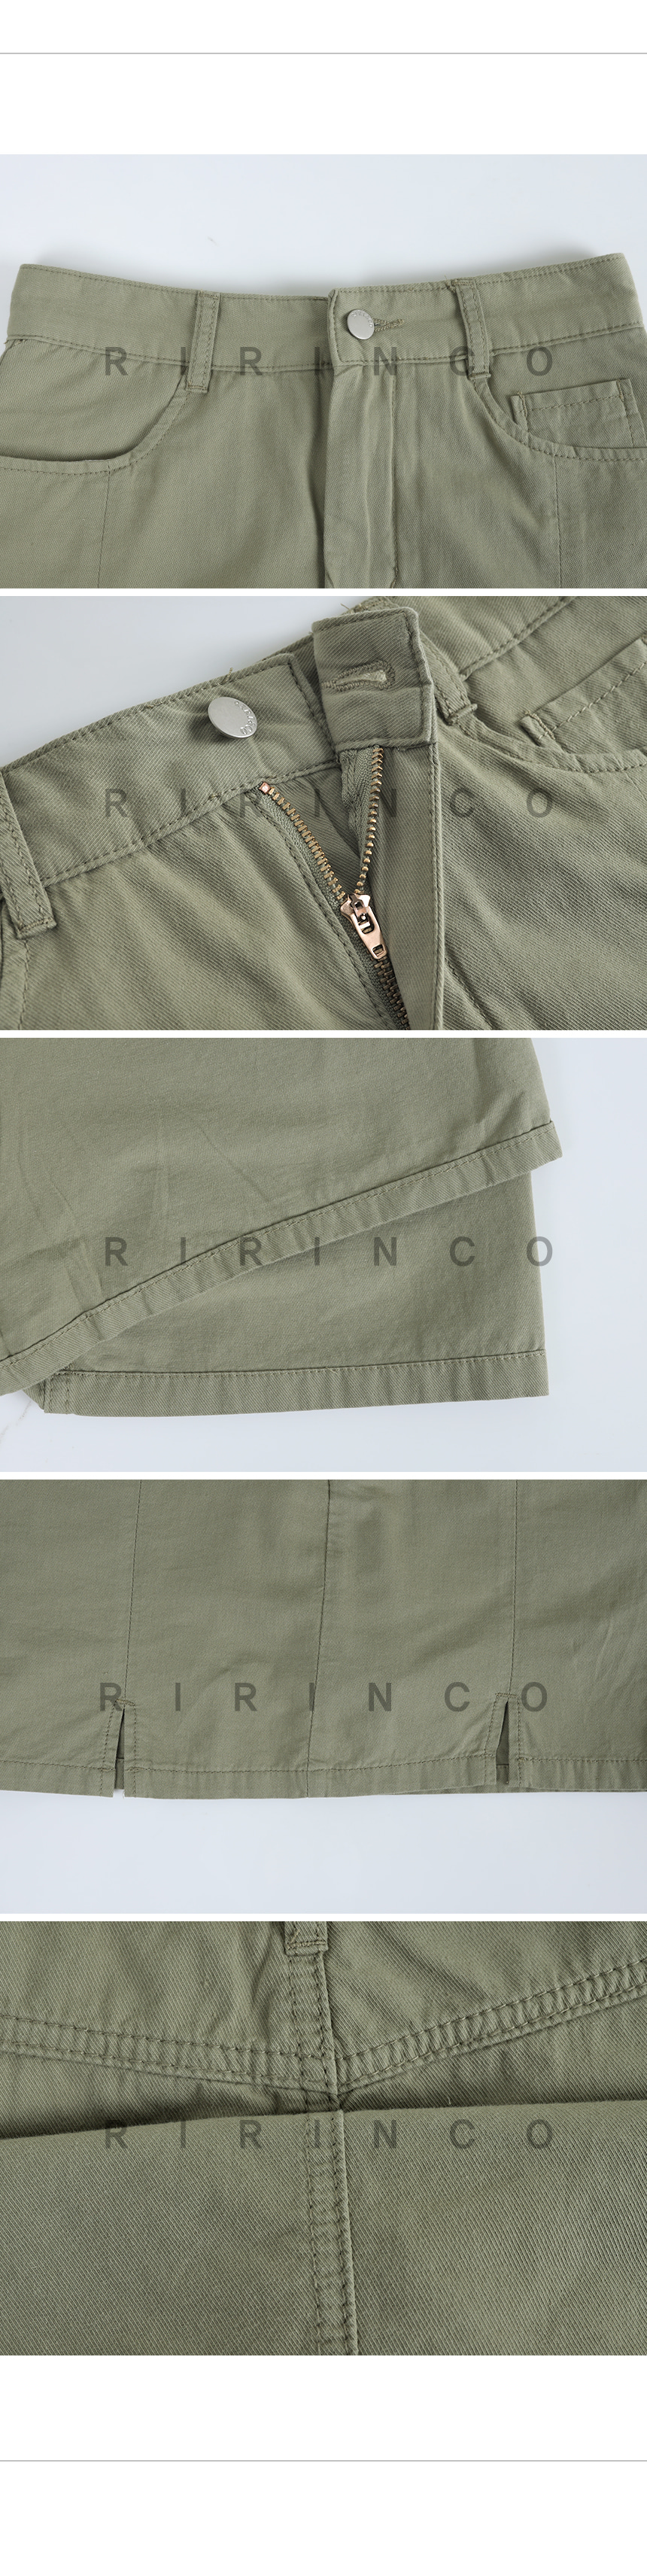 RIRINCO コットンポケットミニスカート(インナーパンツ付き)